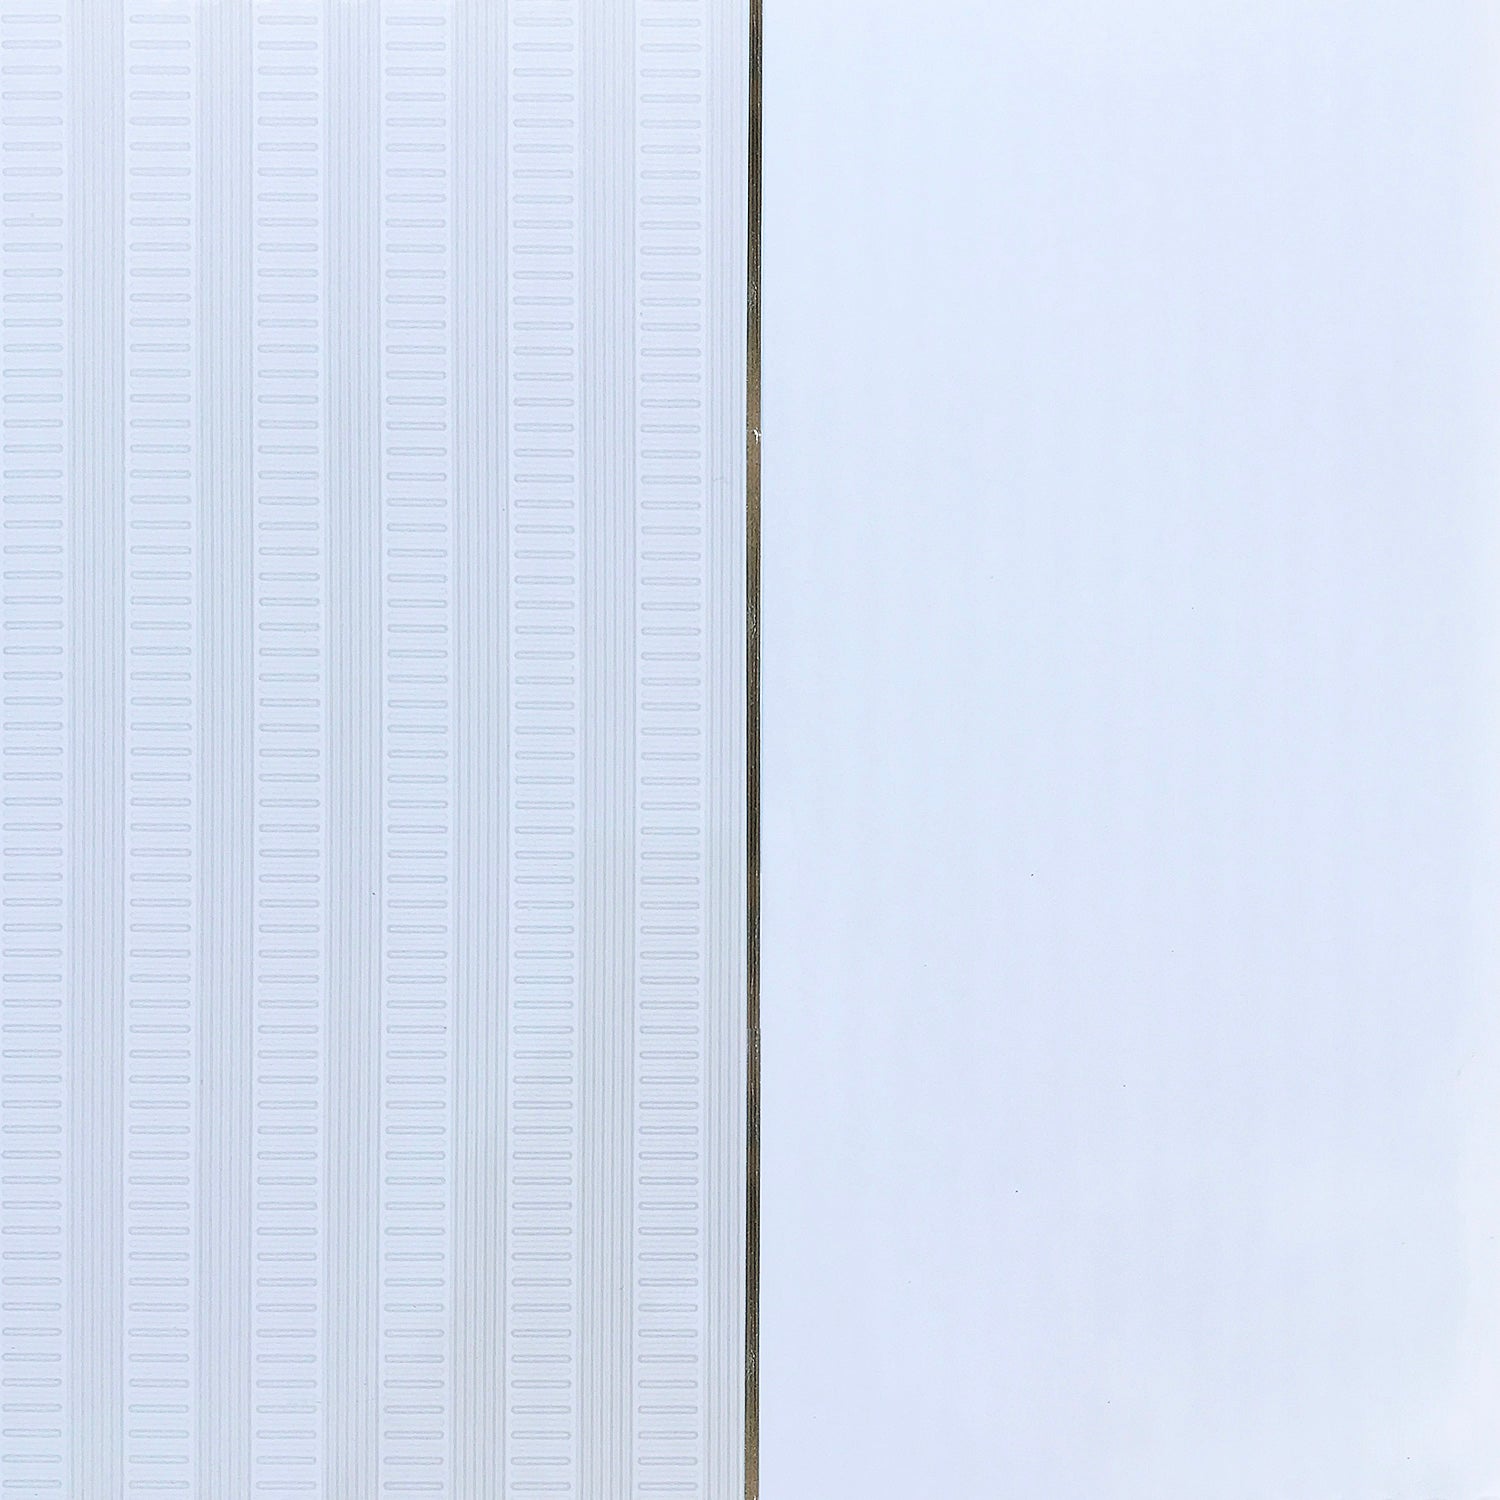 30D72 PVC Ceilings Factory order - Per panel